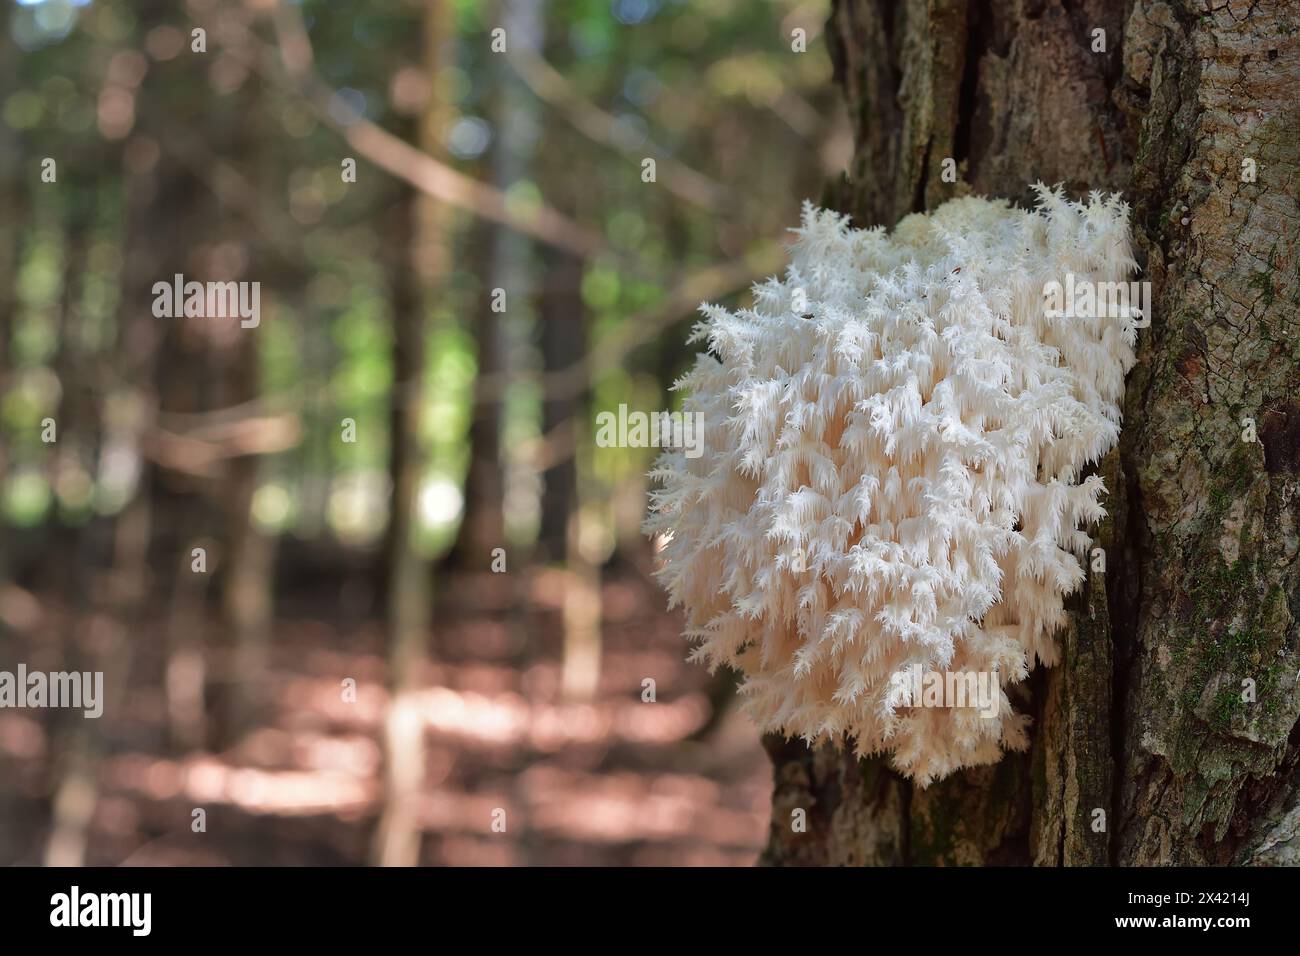 Weißer Pilz auf einem Baumstamm. Saprotrophischer Pilz. Hericium coralloides, allgemein bekannt als Korallenzahnpilz. Stockfoto